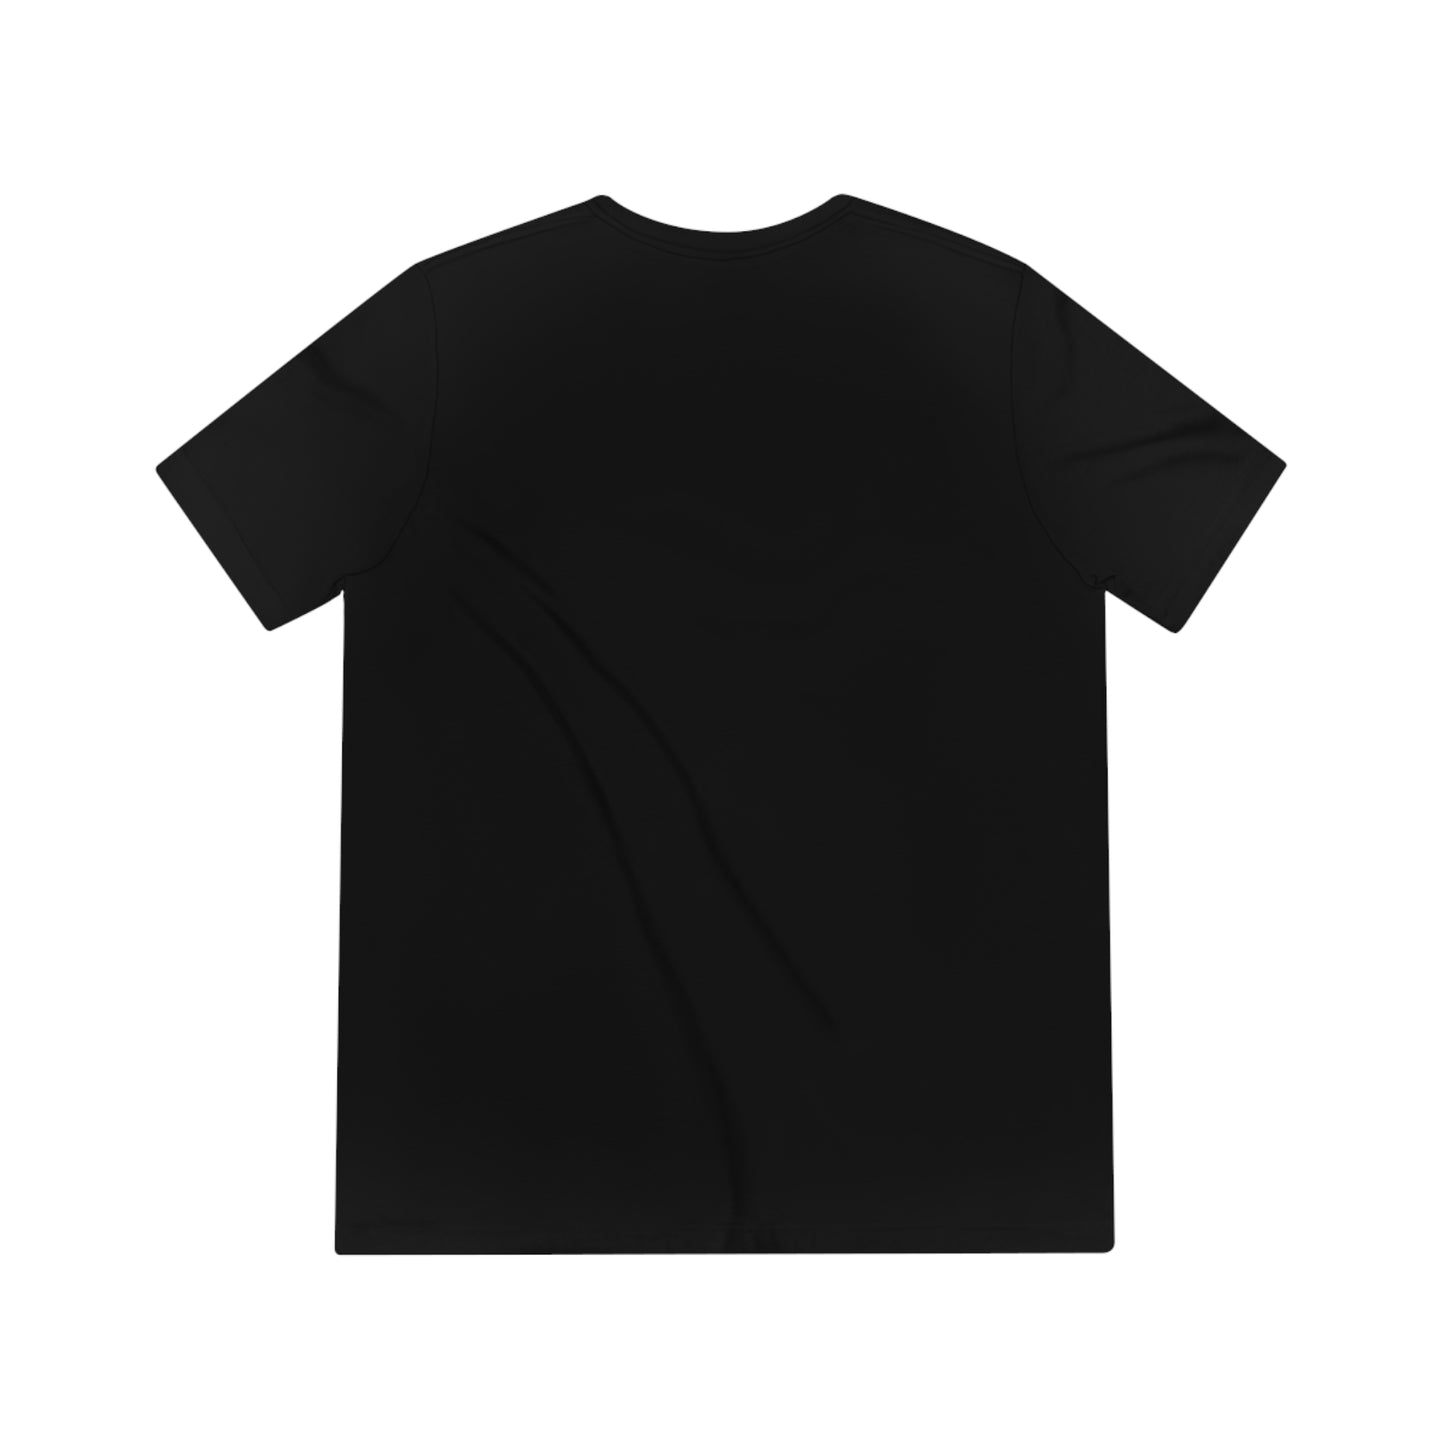 "A$AP Wit Da Cup" - A$AP Rocky Unisex T-Shirt